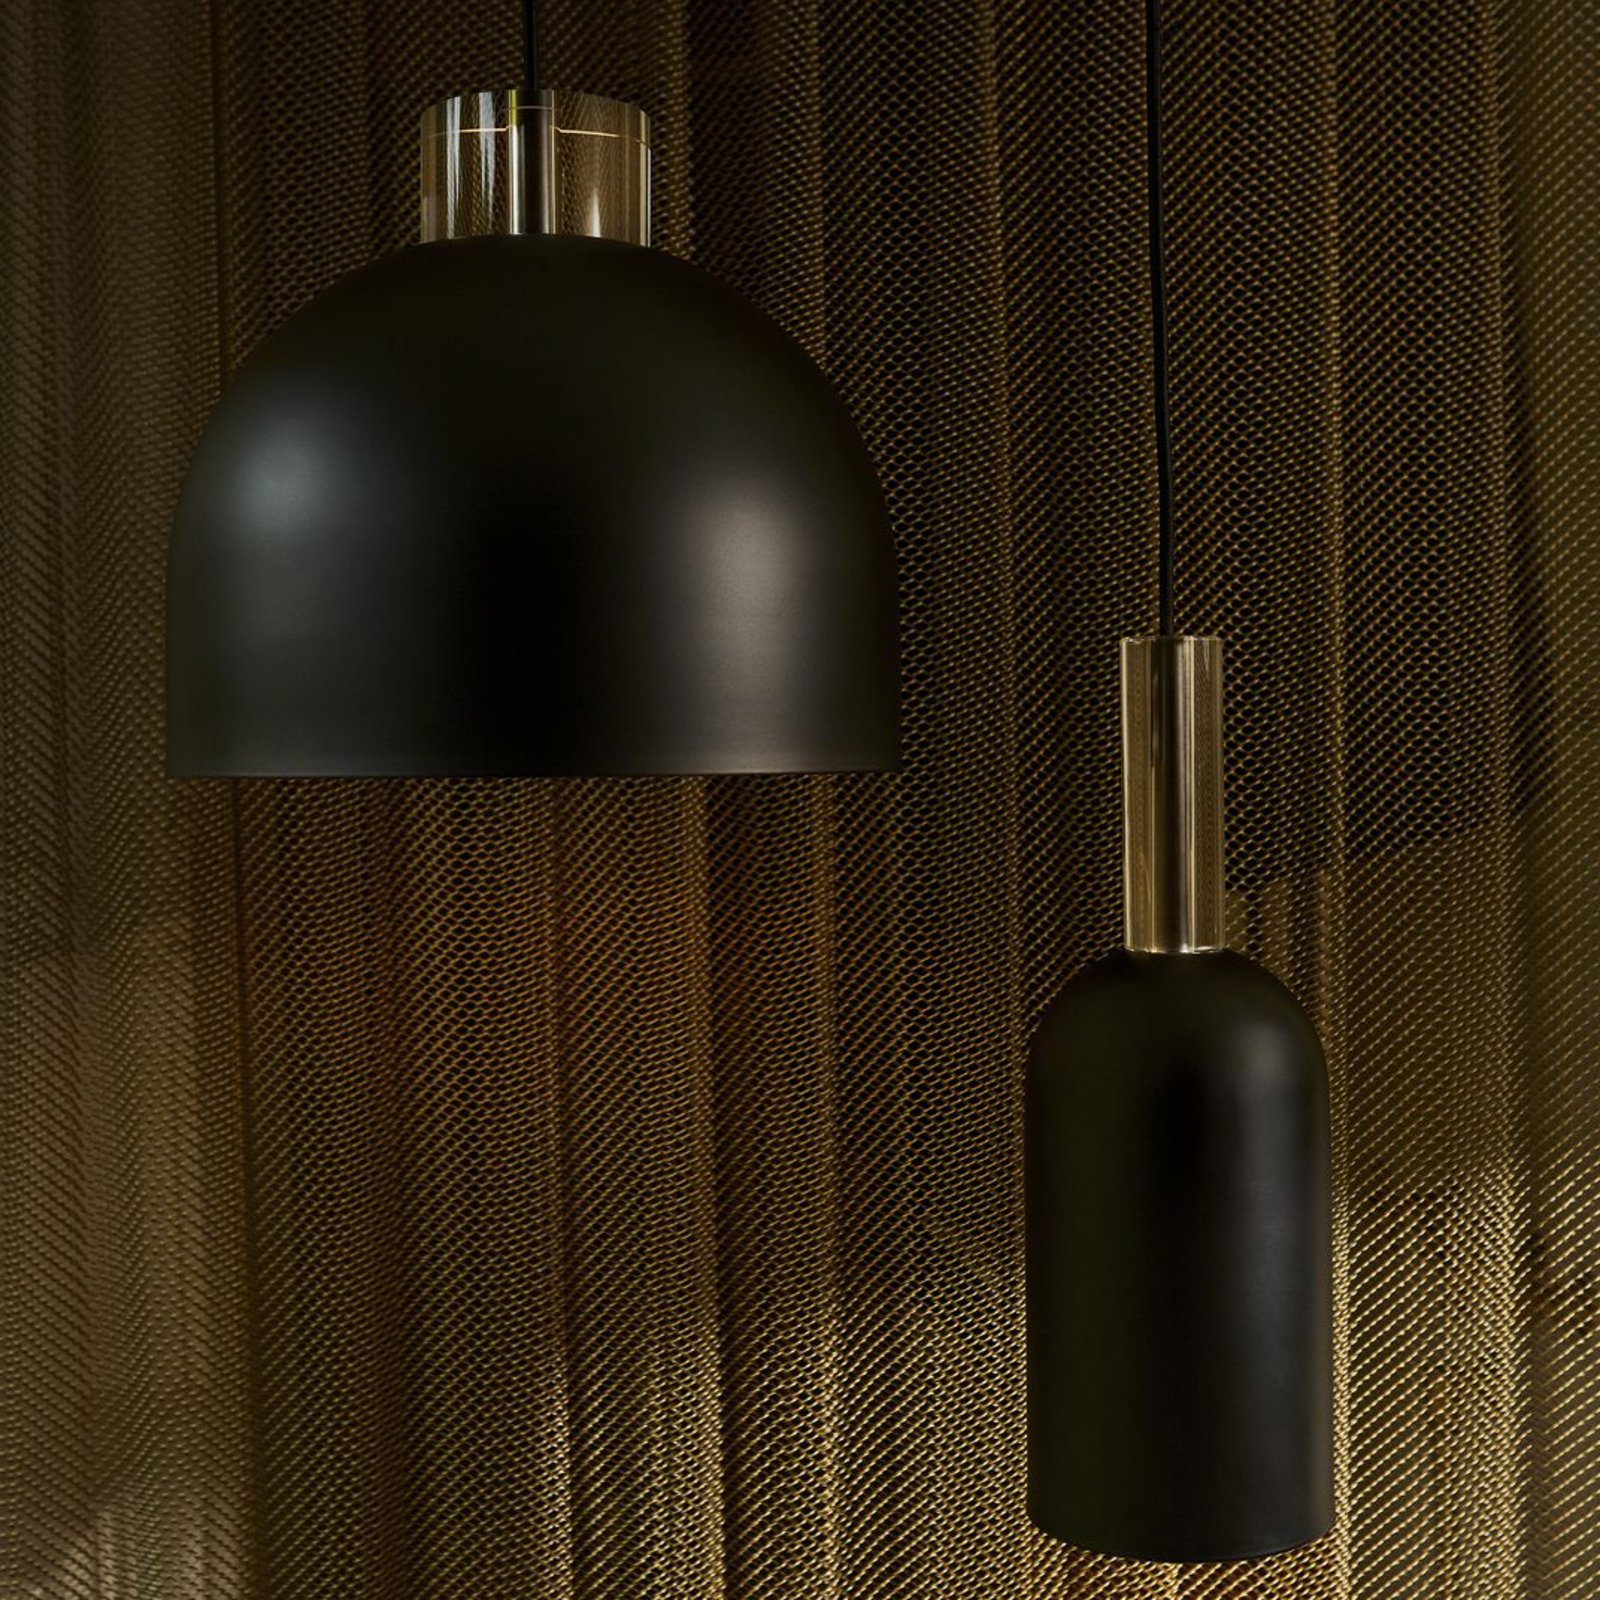 AYTM suspension Luceo, cylindre, noir, Ø 12 cm